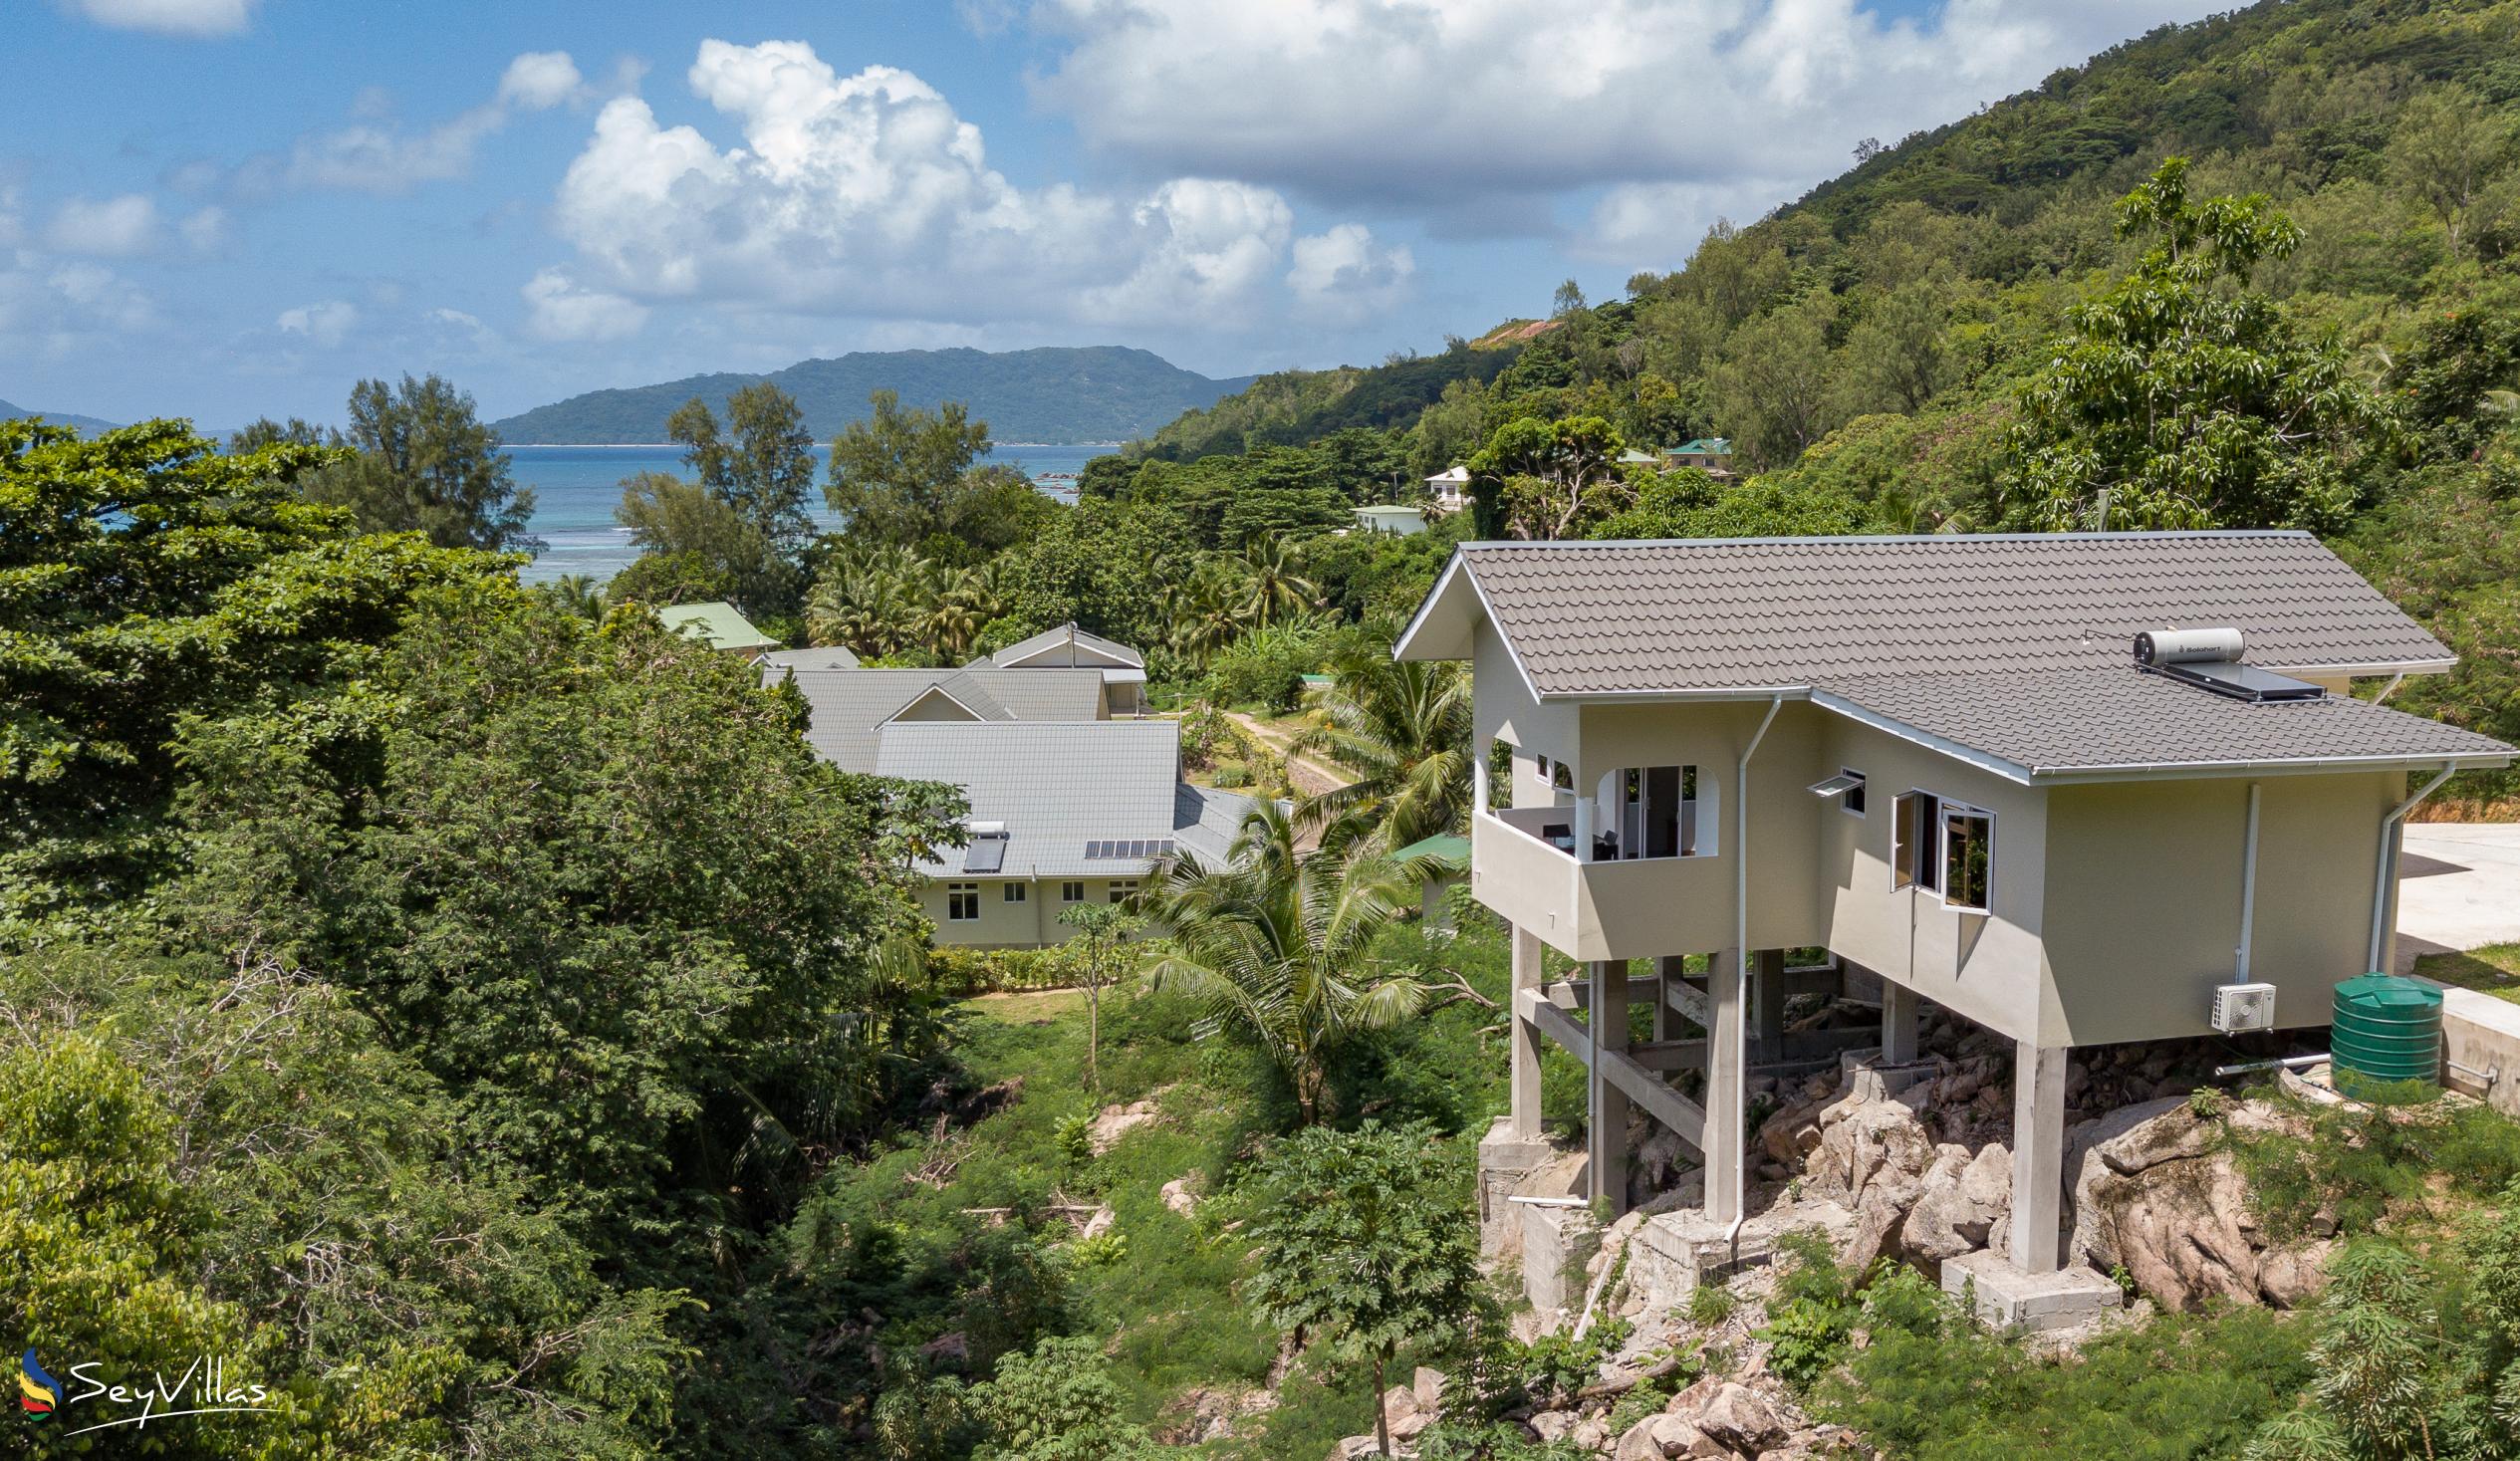 Photo 2: CAM Getaway Villa - Outdoor area - Praslin (Seychelles)